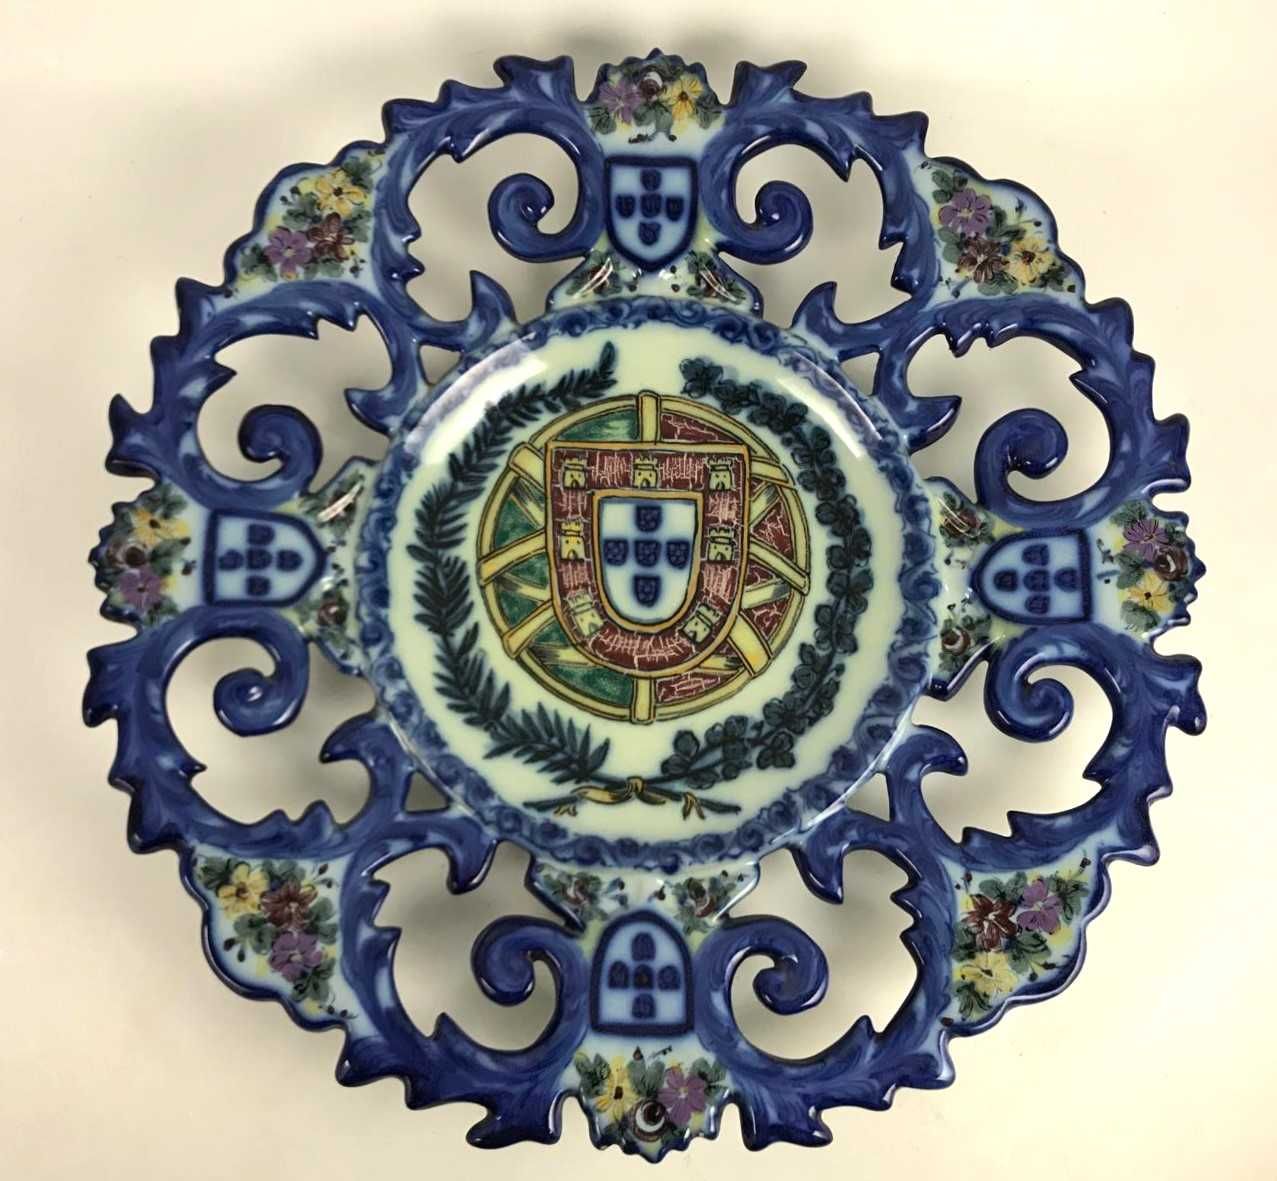 Grande Prato Brasão Portugal - Vestal - 35.5 cm